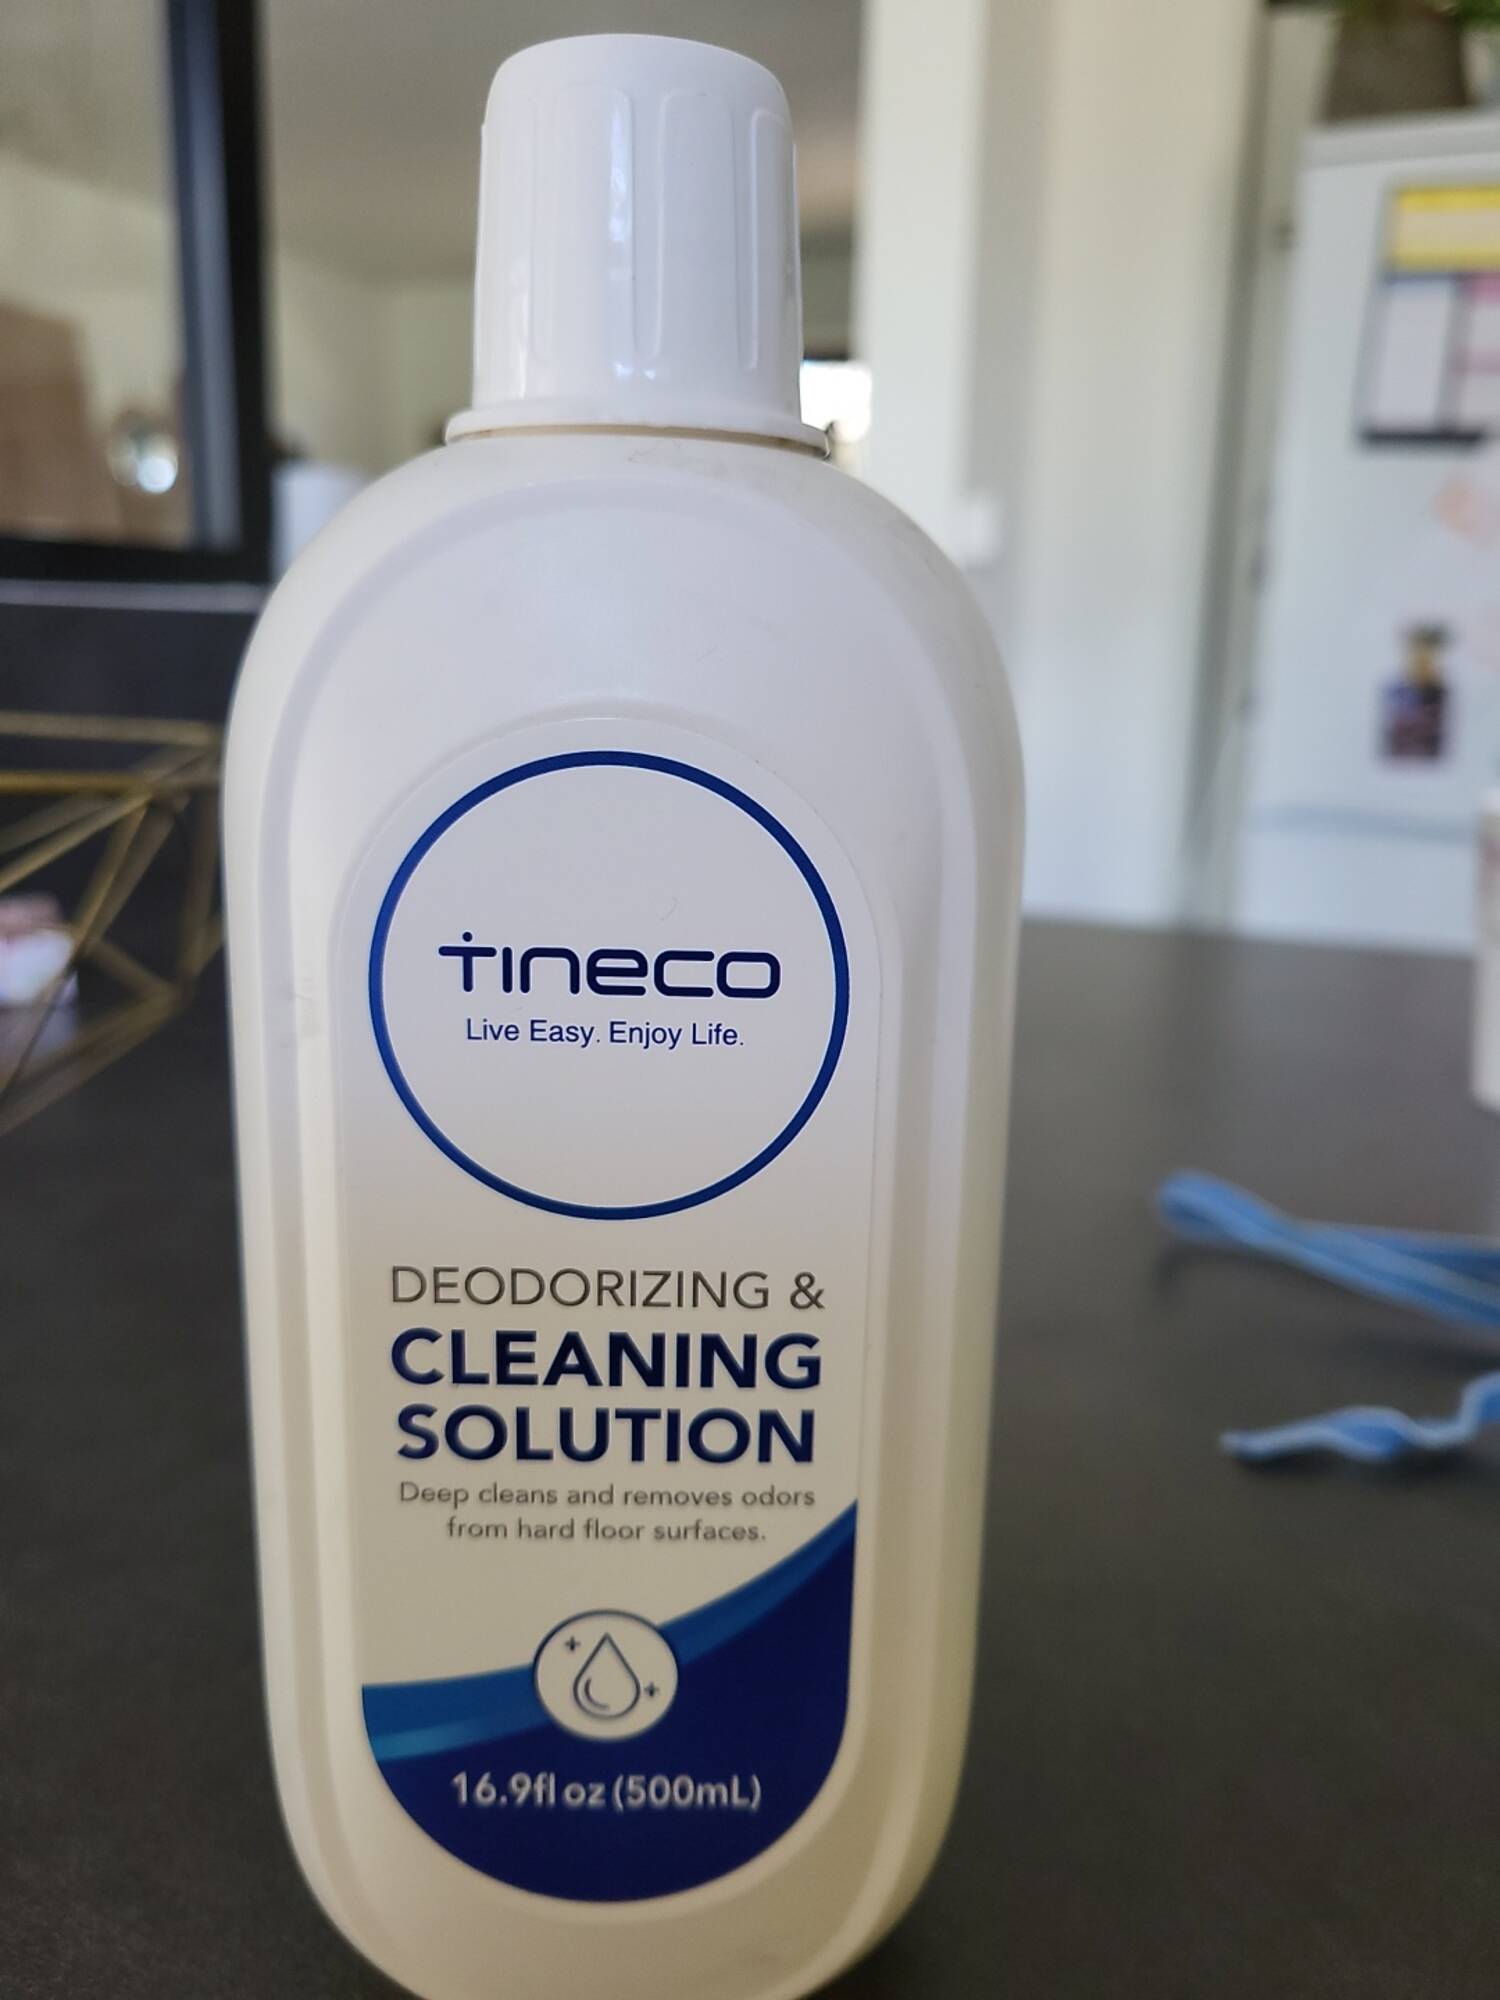 Quel produit peut-on mettre dans un Tineco ?